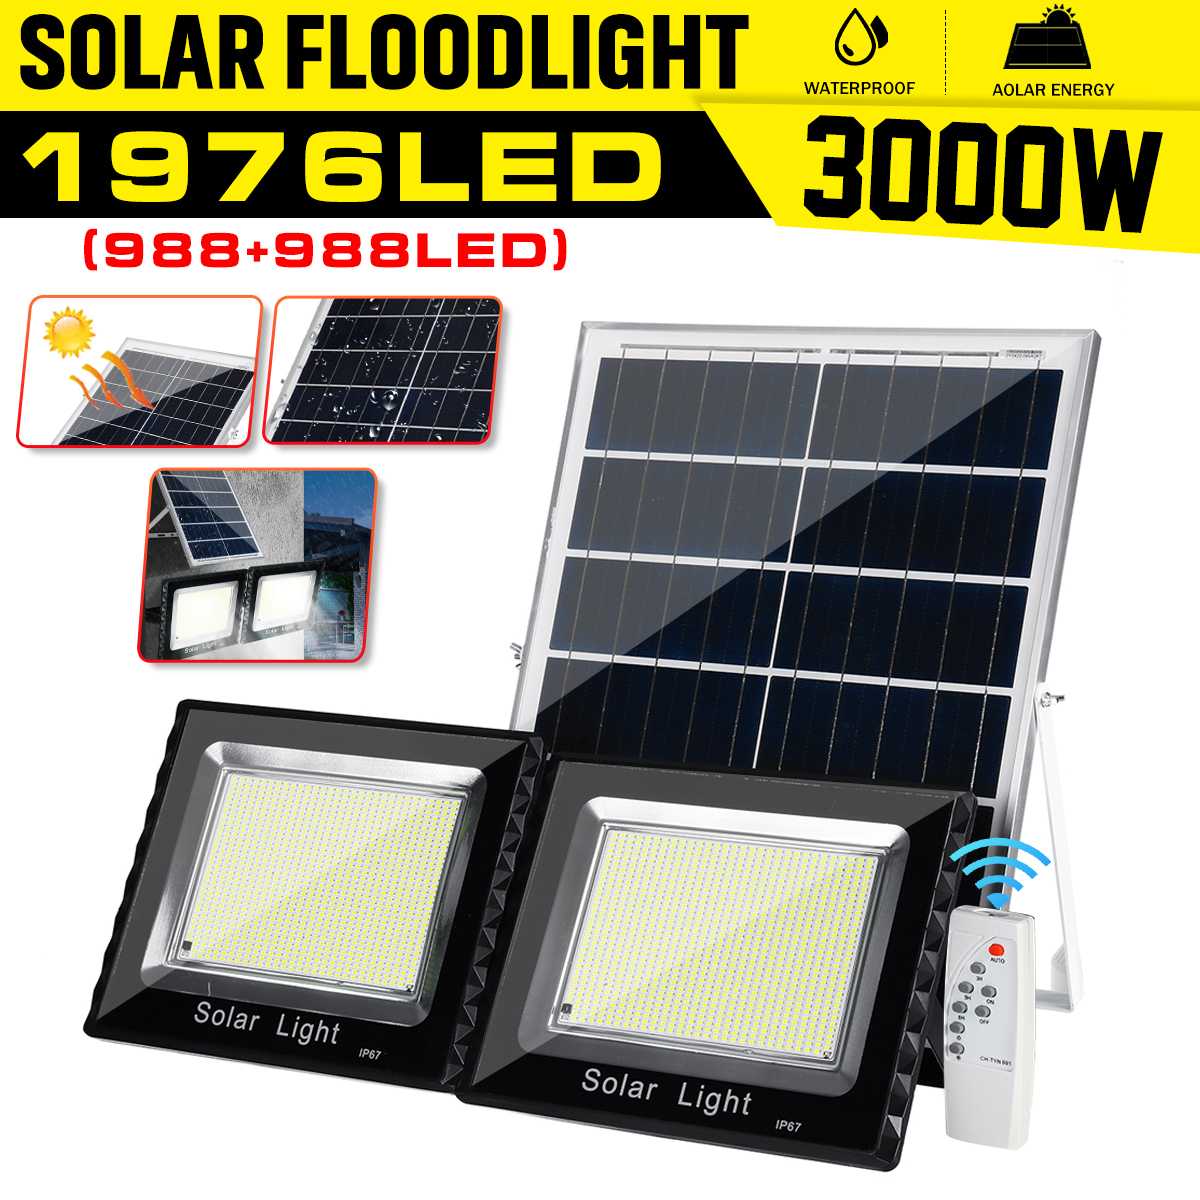 Solar Flood Light 988+988 Led Light Solar Lamp Outdoor Waterproof Wall Lamp Led Solar Lamps Multi-function Garden Lighting 3000W